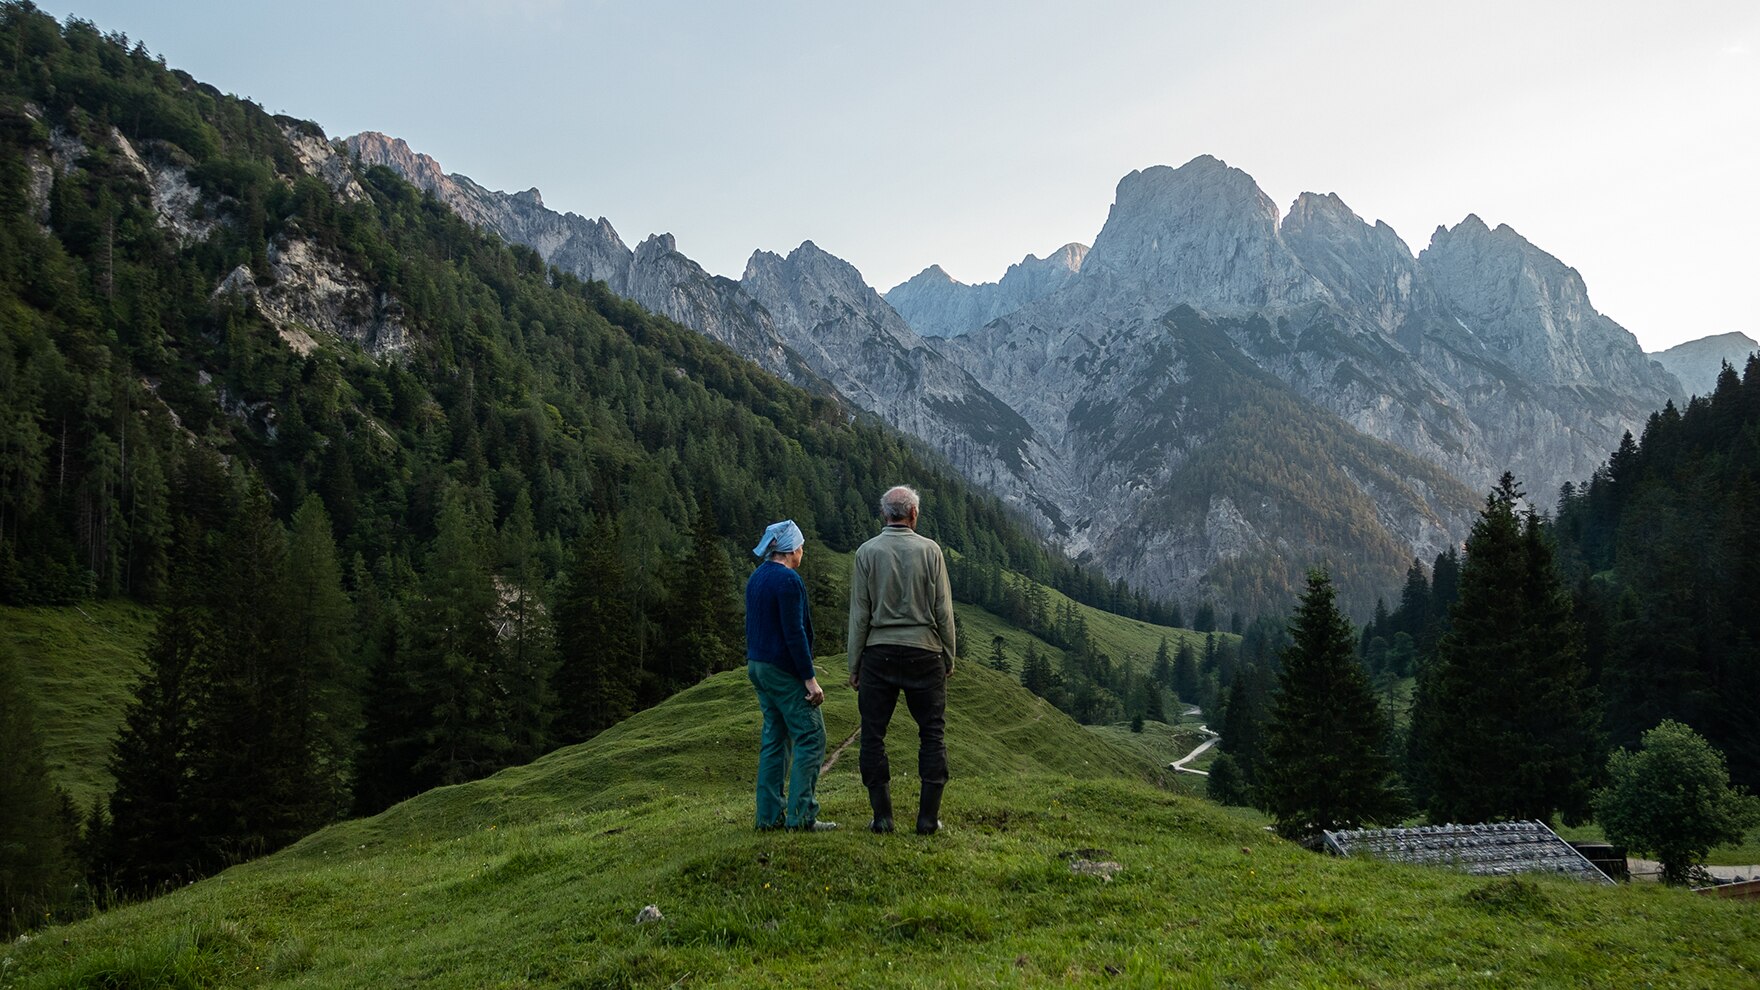 Seit der Gründung ist die Molkerei Berchtesgadener Land aus Überzeugung verantwortungsbewusst gegenüber den Tieren, der Natur und den Verbrauchern. 